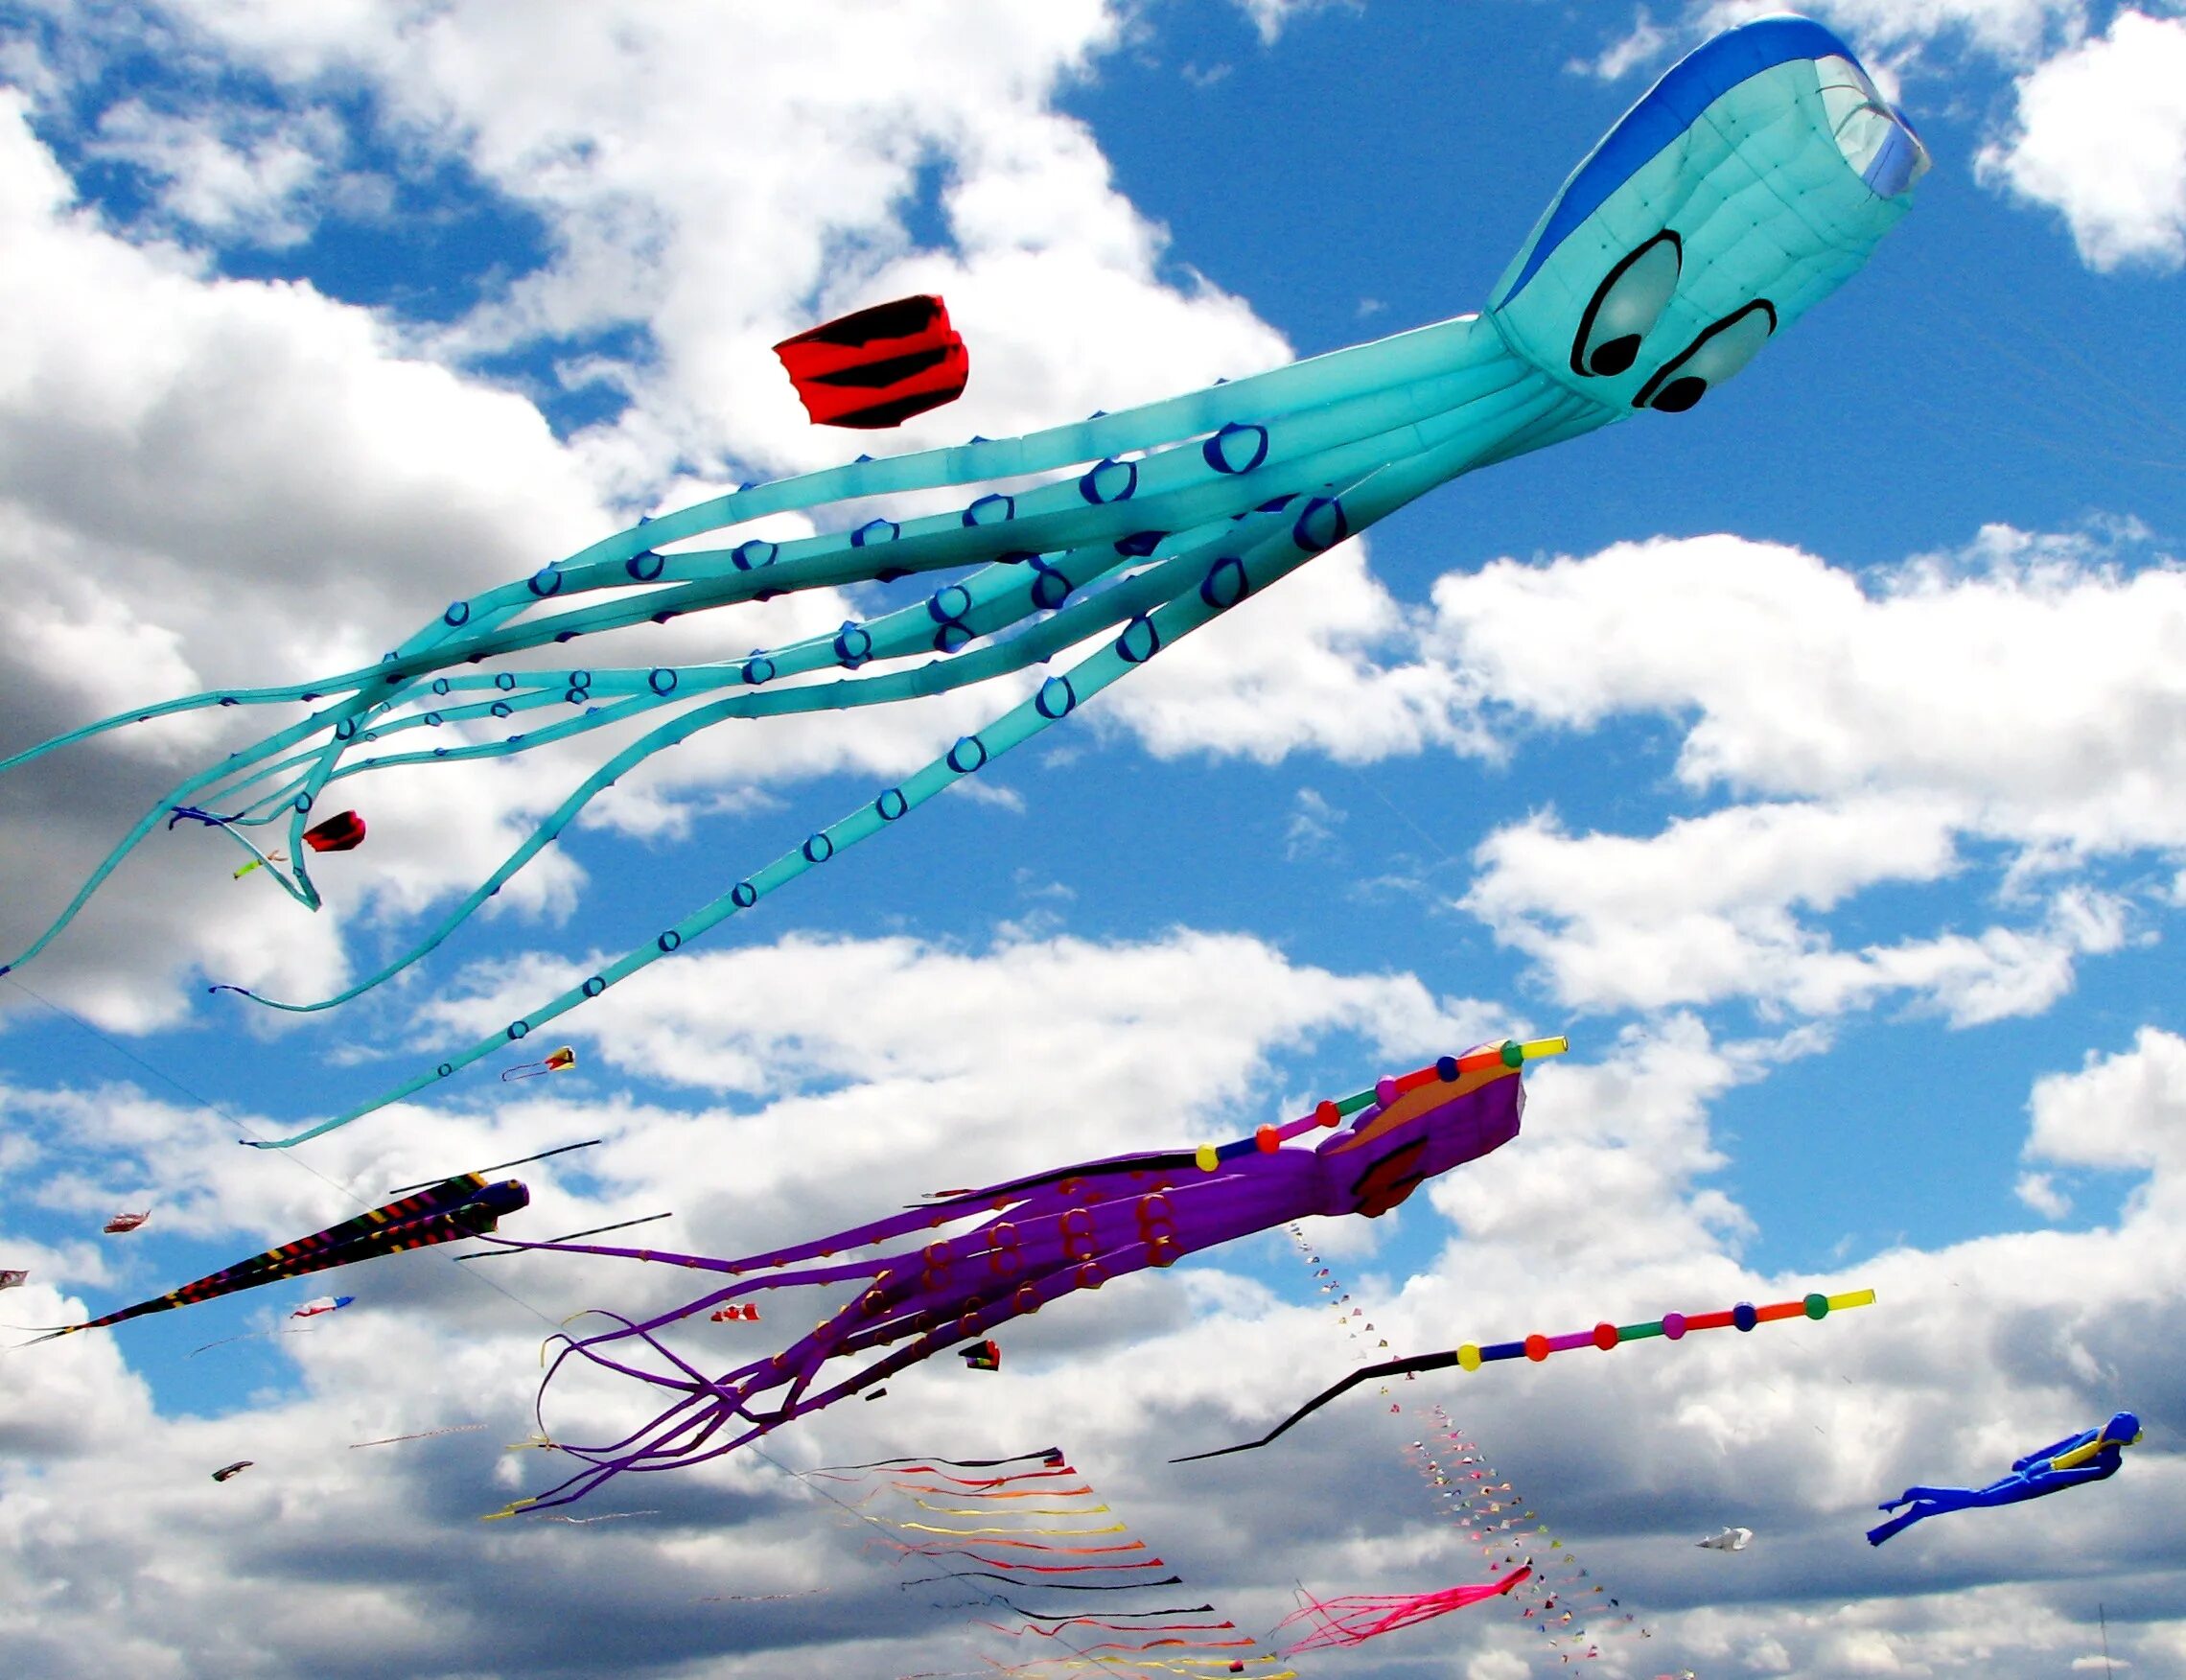 Про воздушные змеи. Воздушный змей. День воздушных змеев и бумажных самолетиков. Воздушный змей - летательный аппарат. Запуск воздушных змеев.